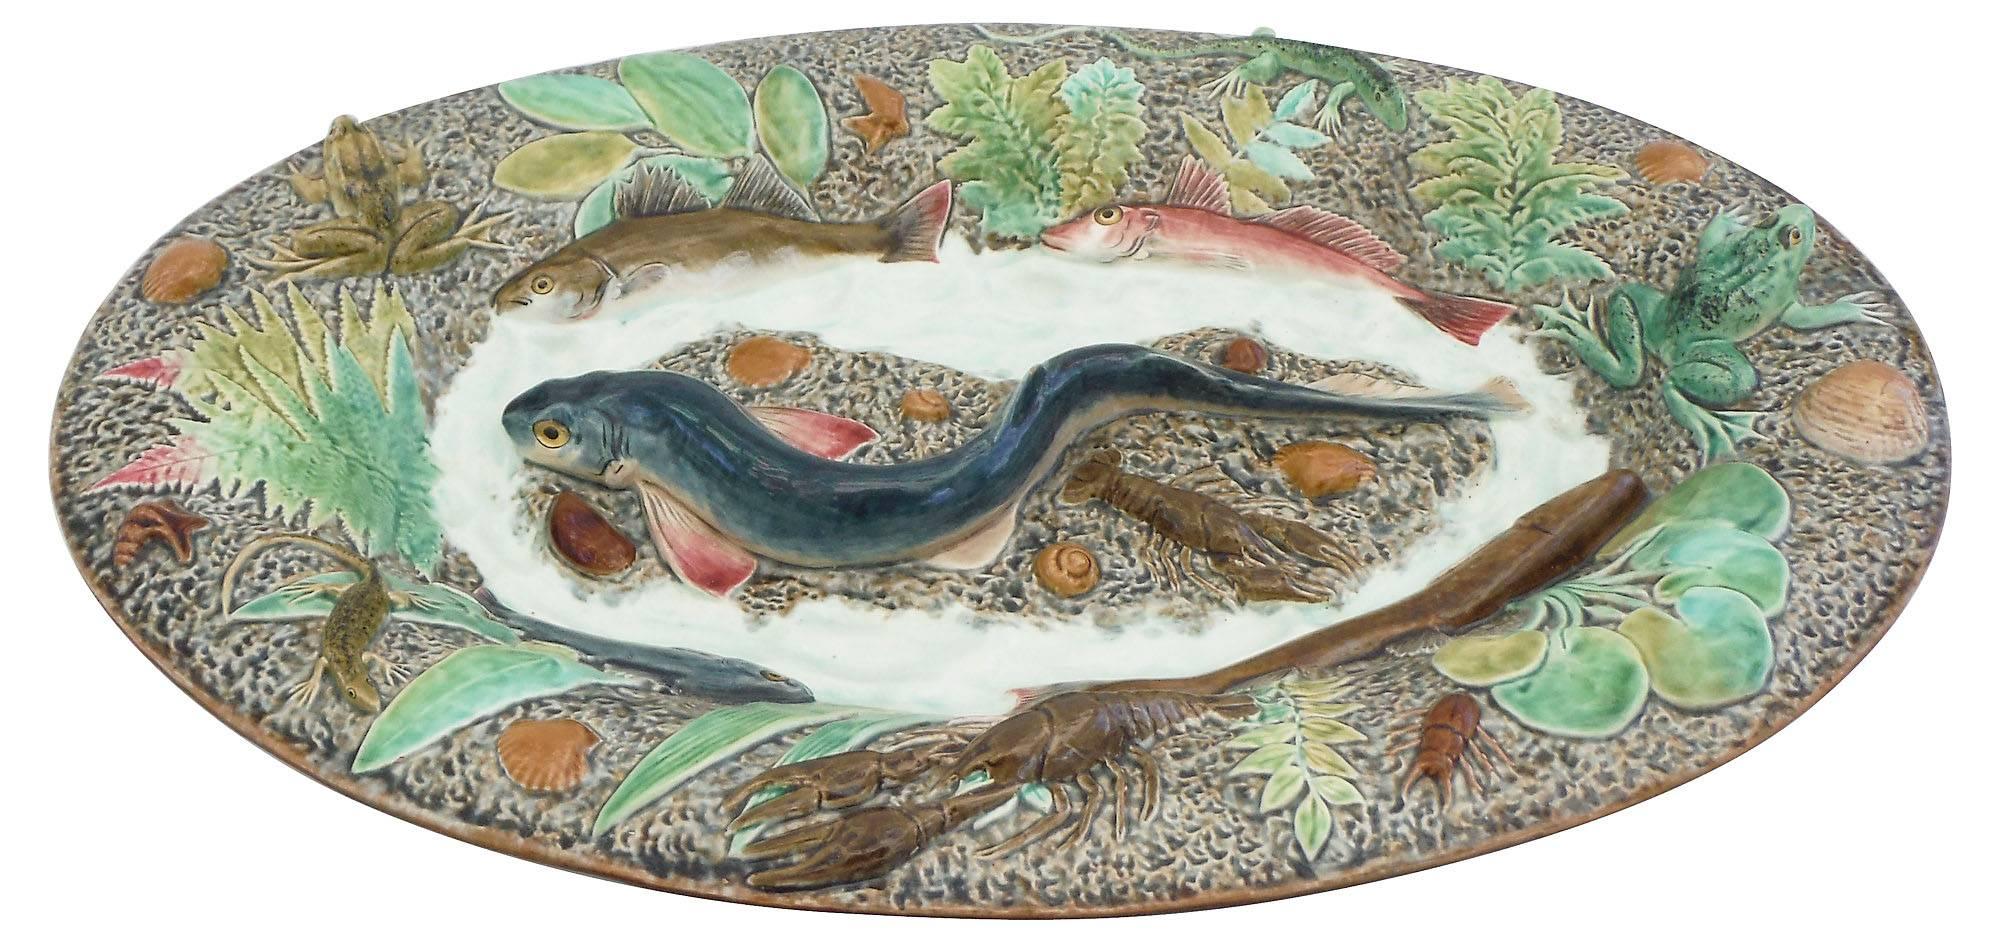 Grand plat mural de Palissy, un grand requin-chat au centre entouré de quatre poissons, deux grenouilles, deux écrevisses, deux lézards, des coquillages et différentes plantes vertes, circa 1900, ce plat est inspiré d'un plat de Thomas Sergent et a